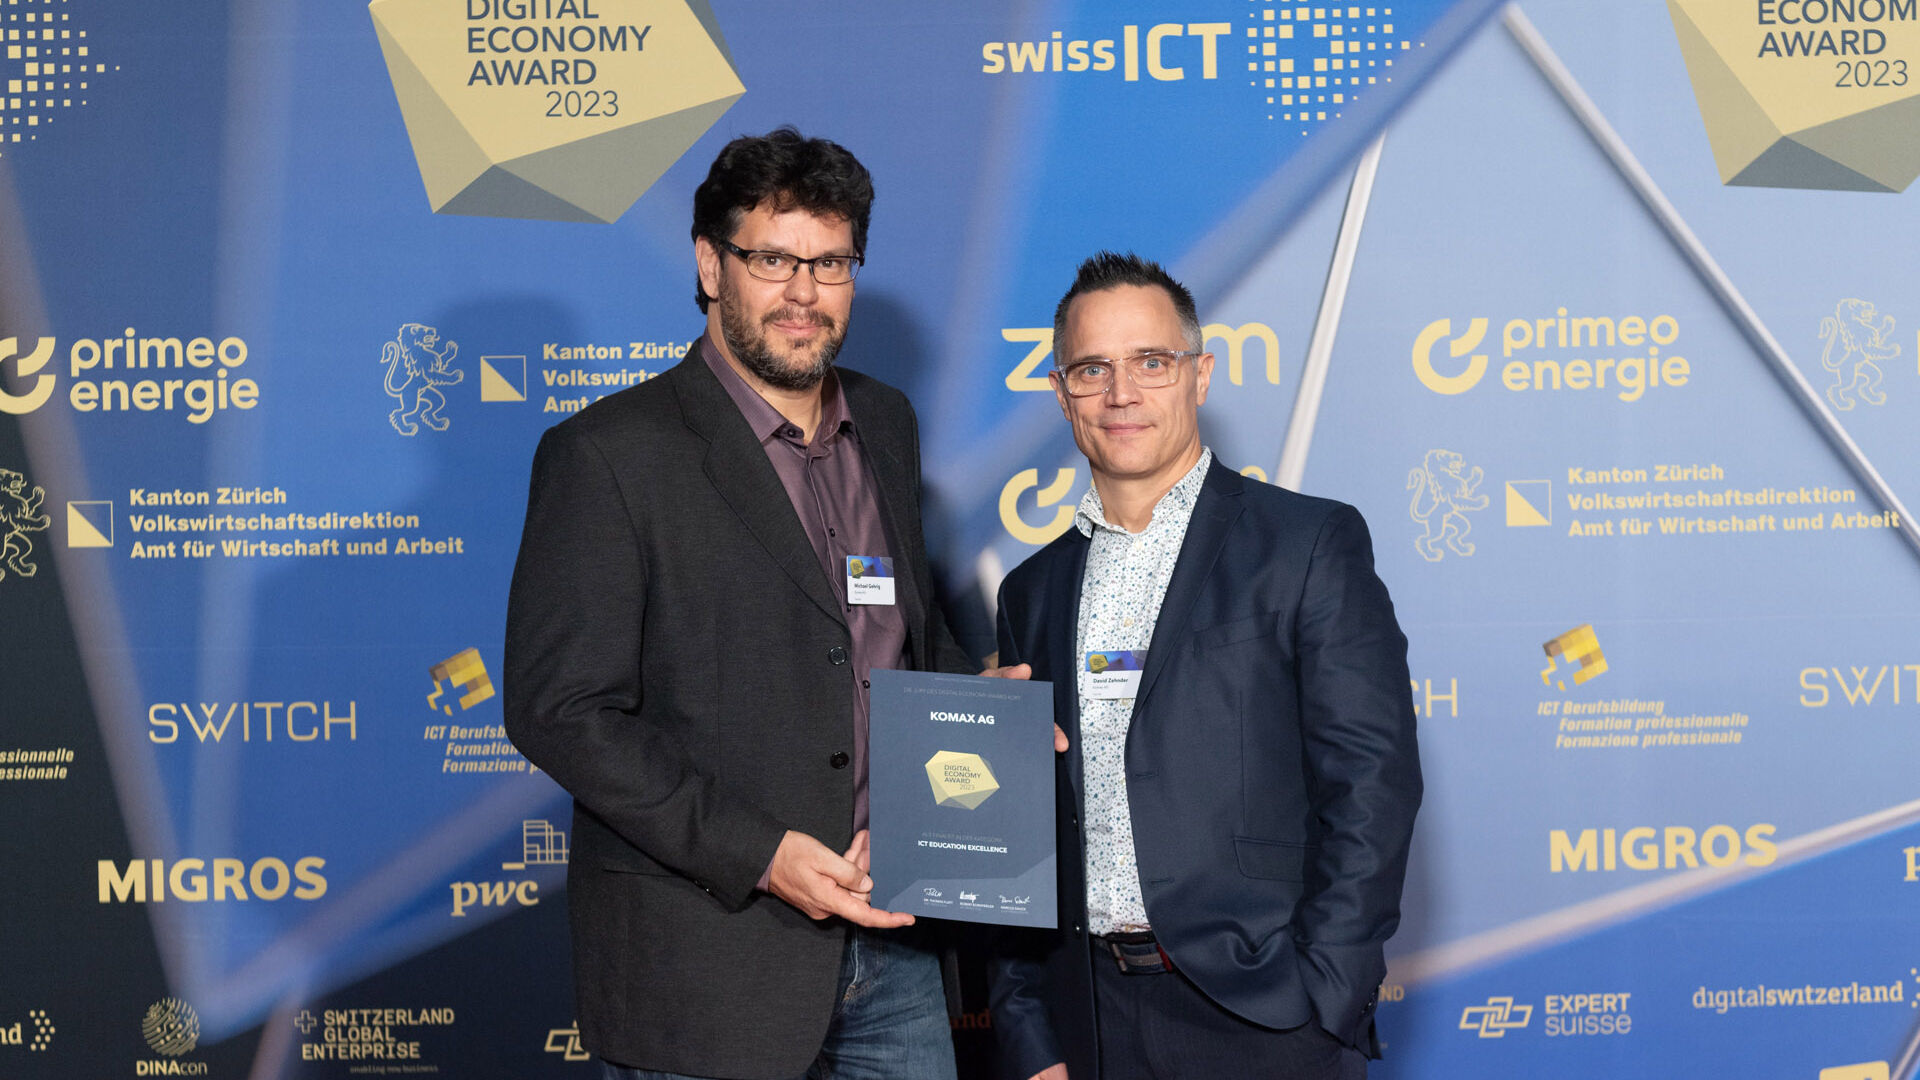 Çmimi i Ekonomisë Dixhitale: fotogaleria e ceremonisë së çmimeve në Hallenstadion në Cyrih në Zvicër më 16 nëntor 2023